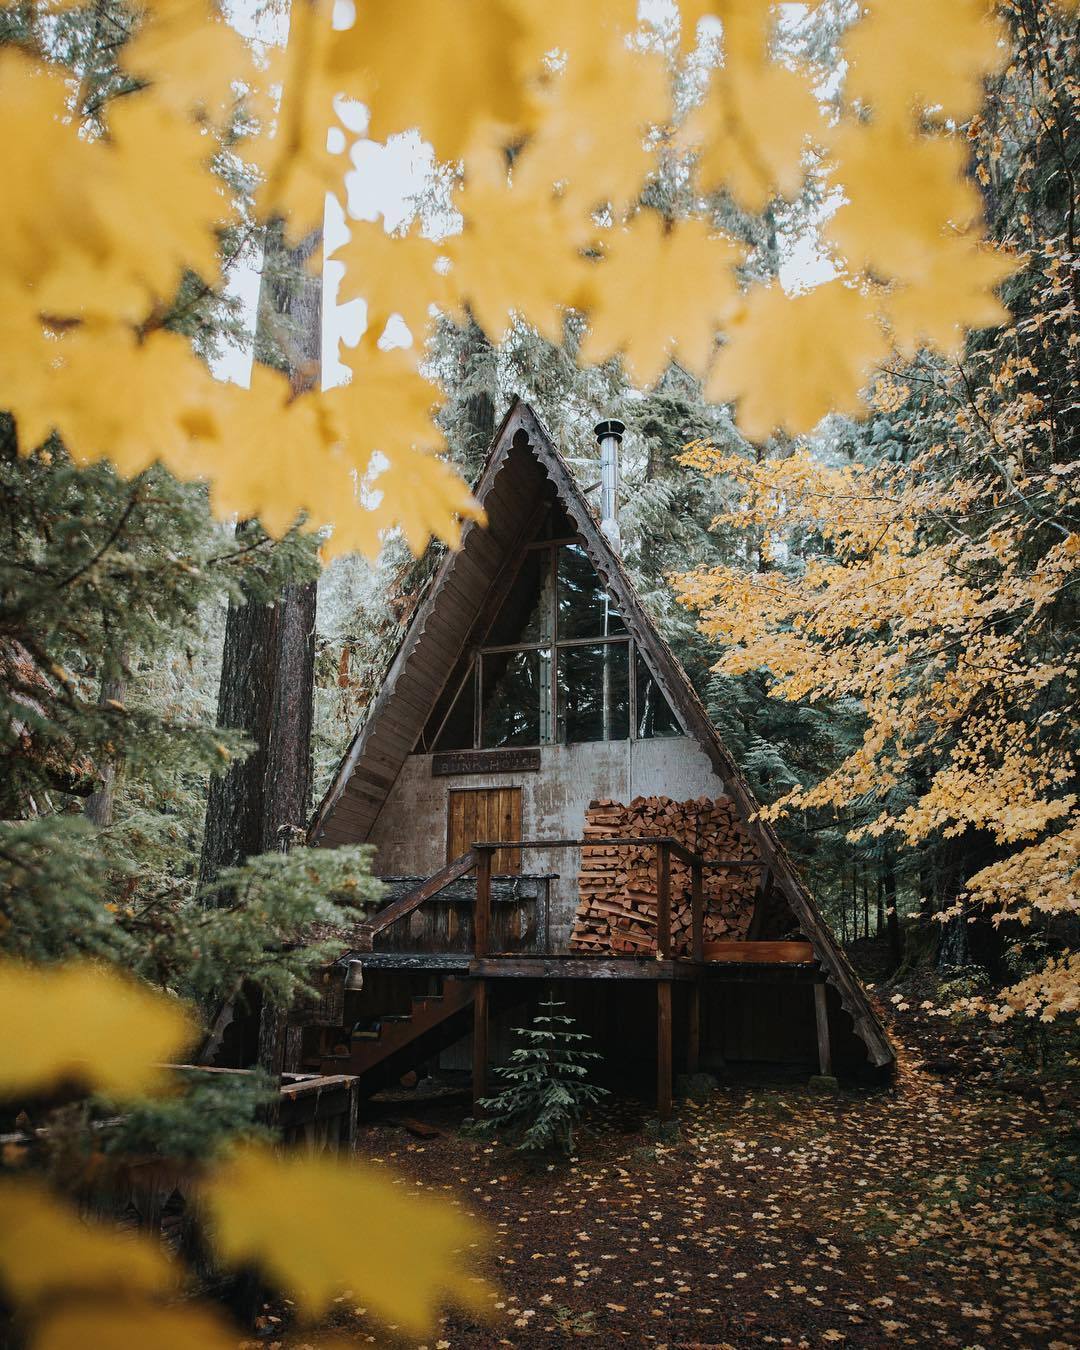 wild-cabins:Bill Kim